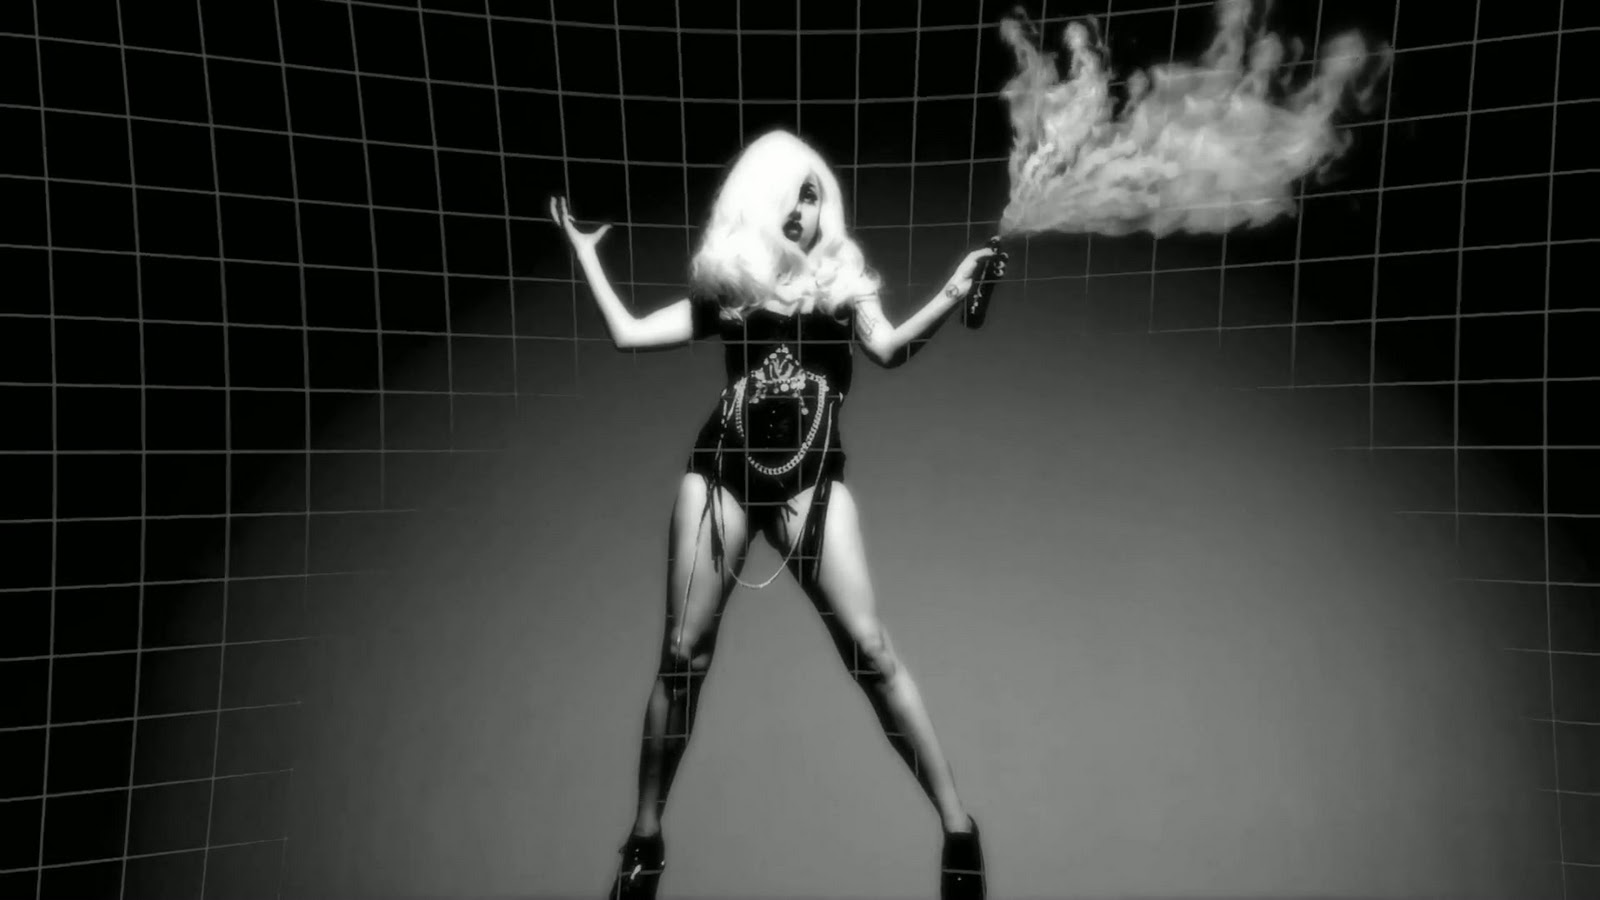 Gaga game песня